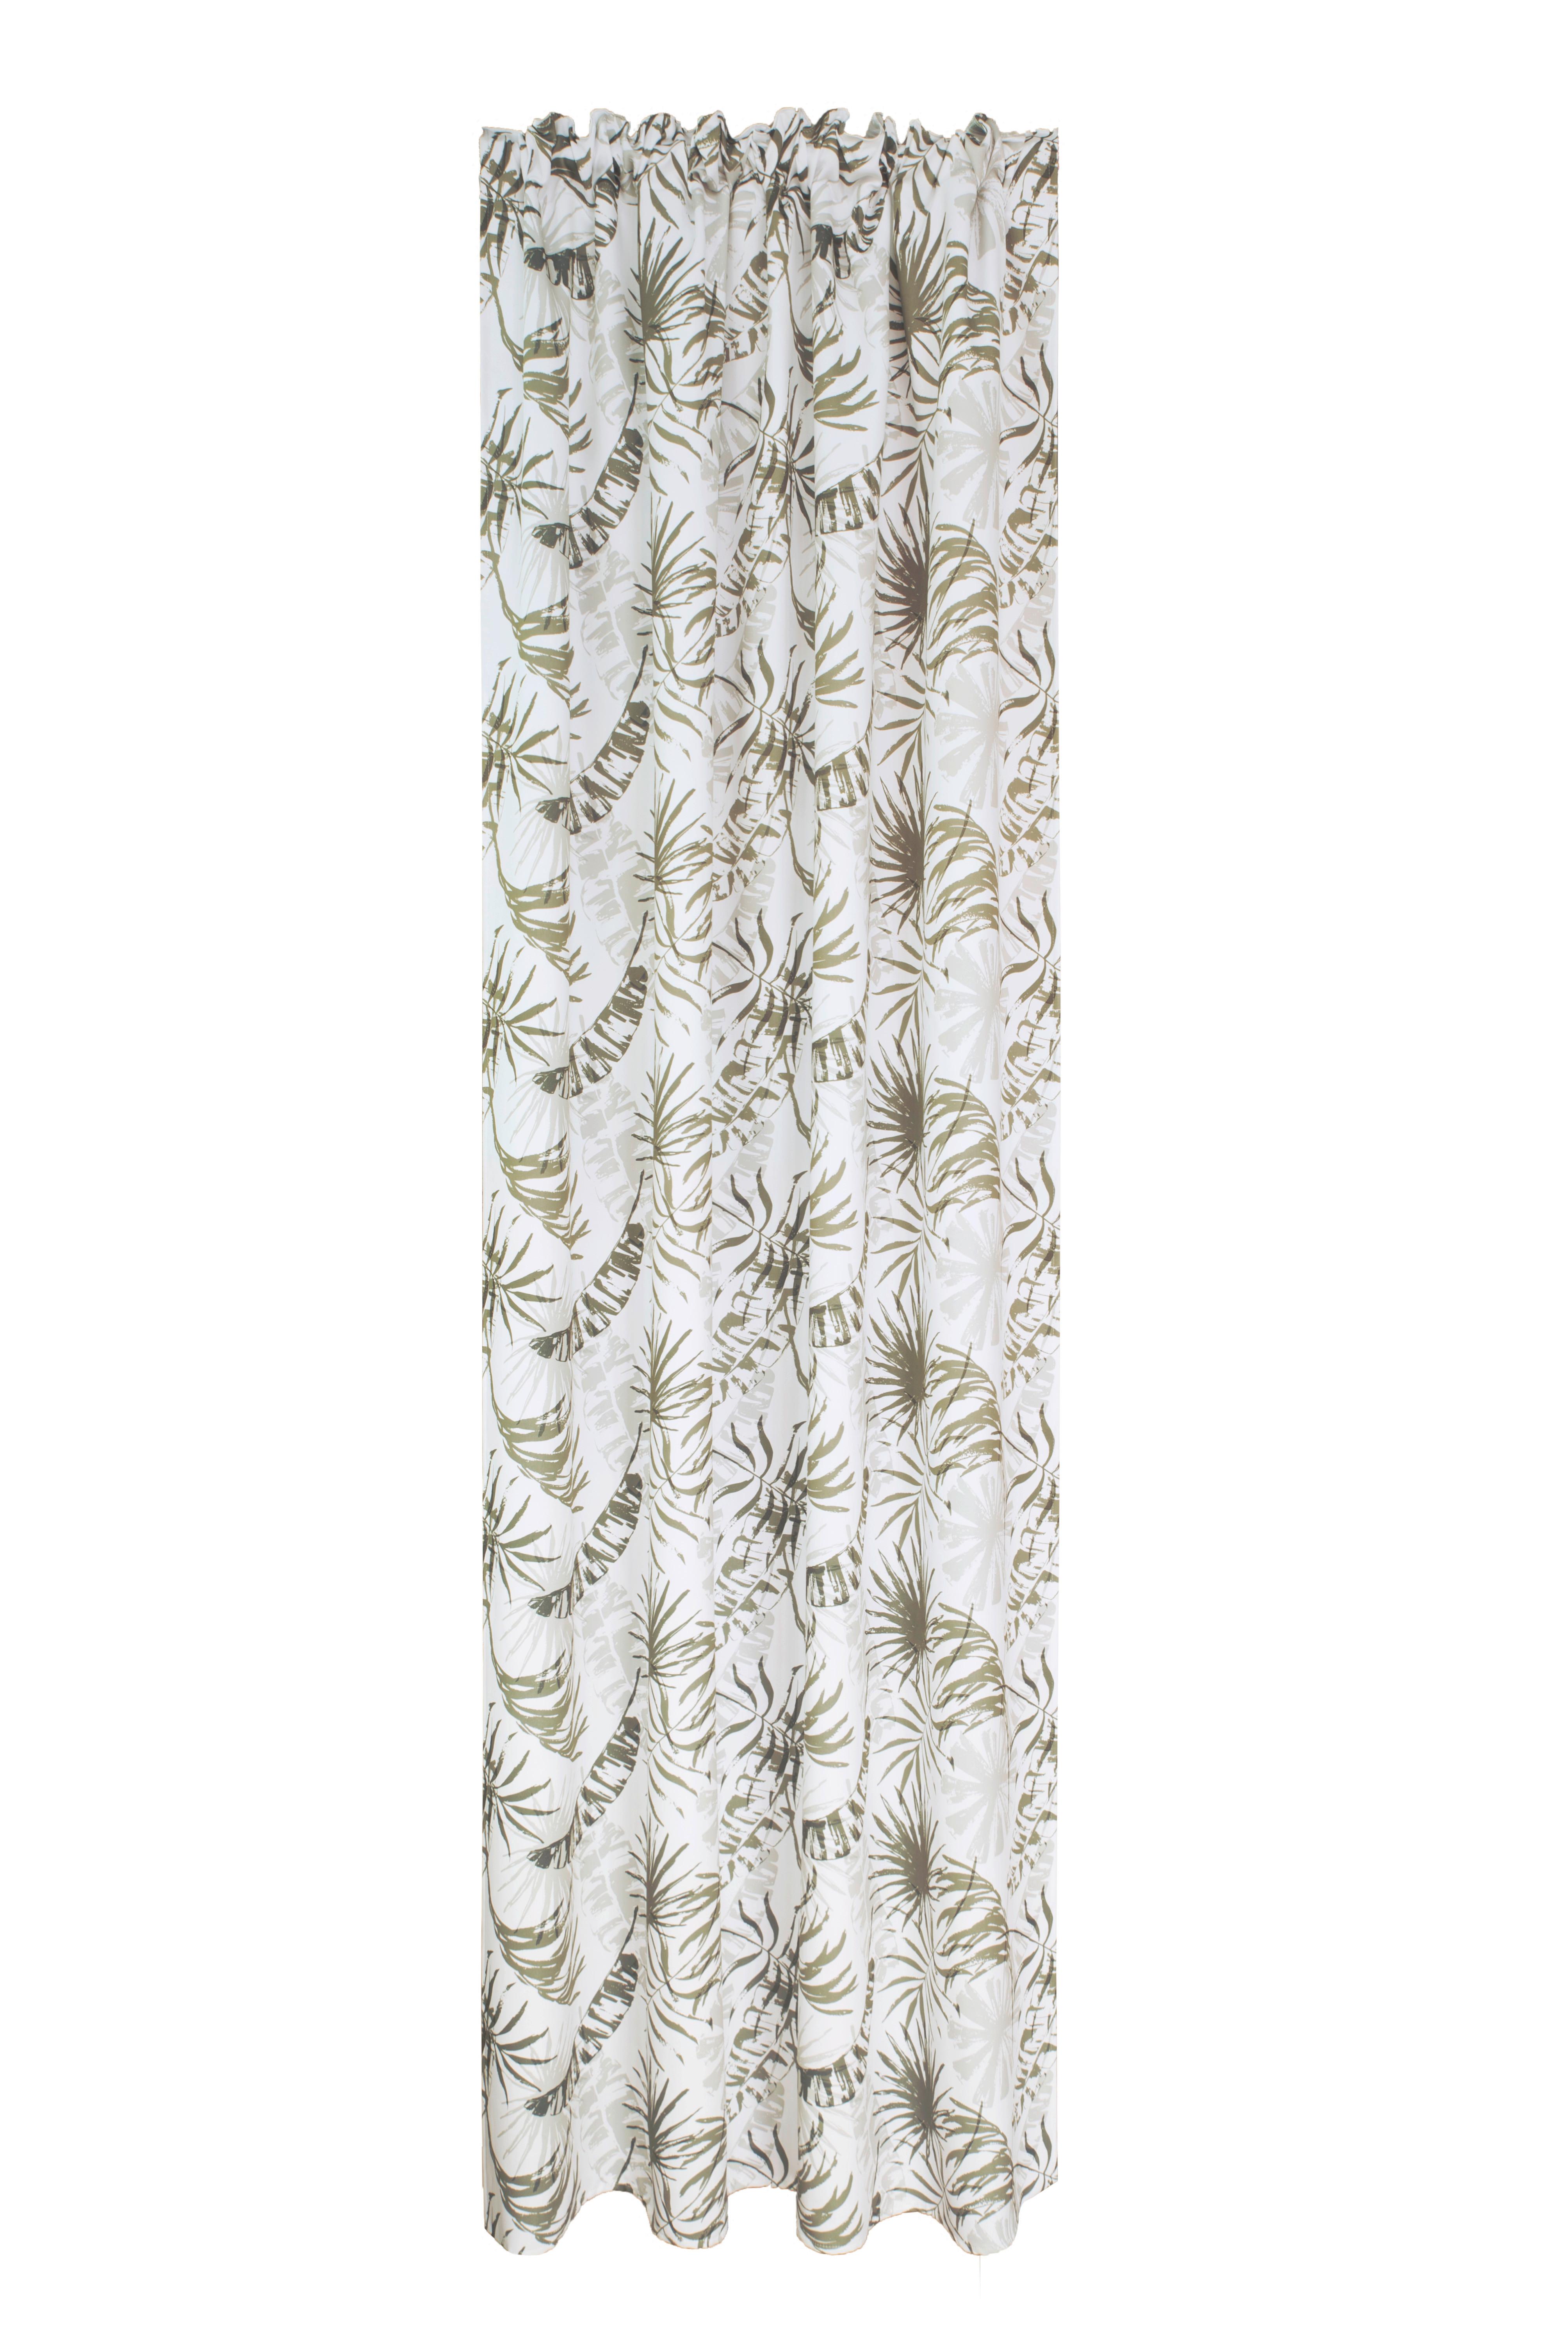 Készfüggöny Nele - Olívazöld, romantikus/Landhaus, Textil (140/245cm) - James Wood